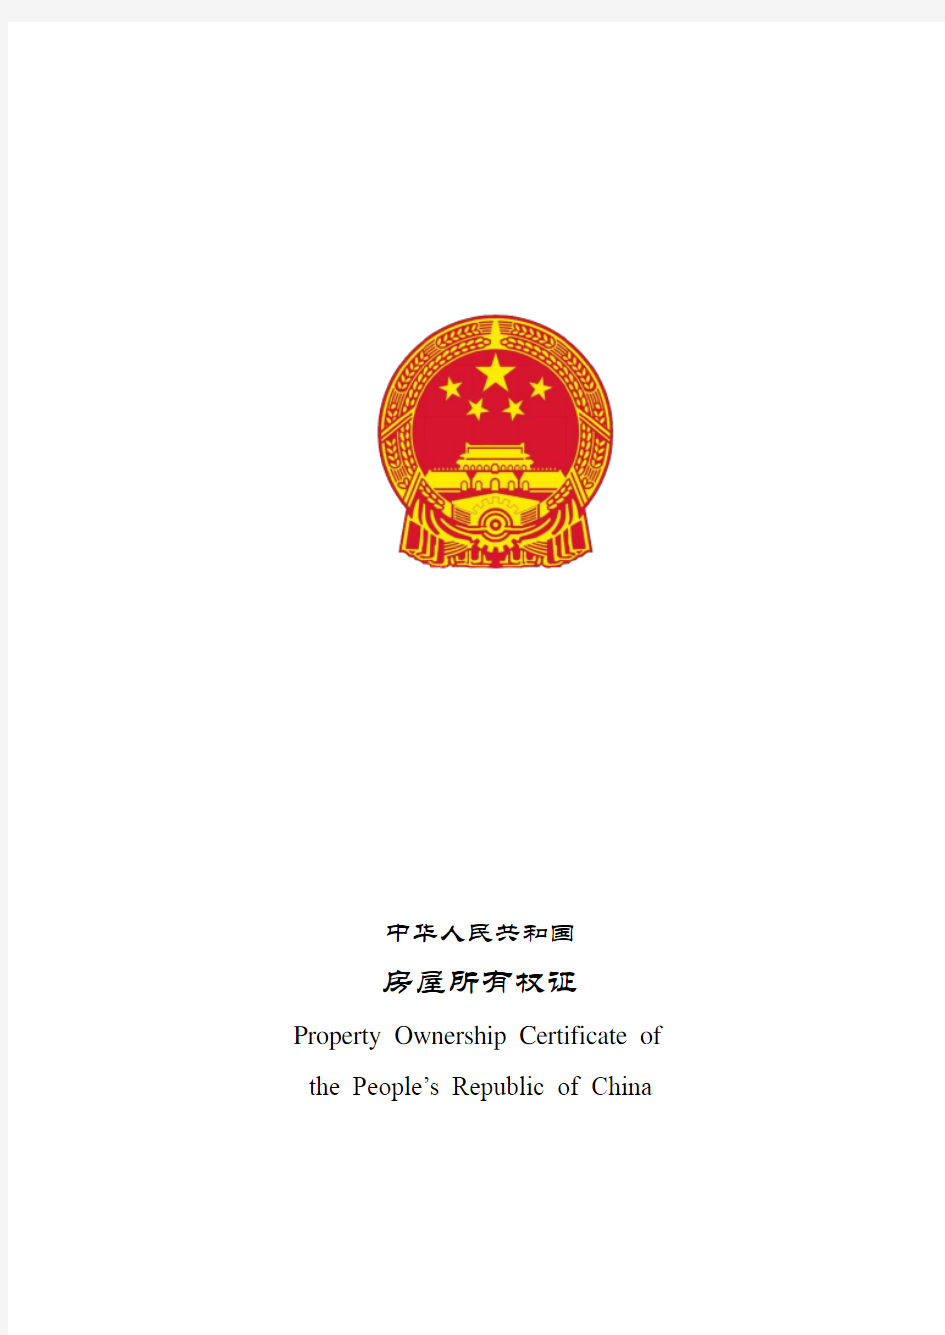 中华人民共和国房屋所有权证 英文